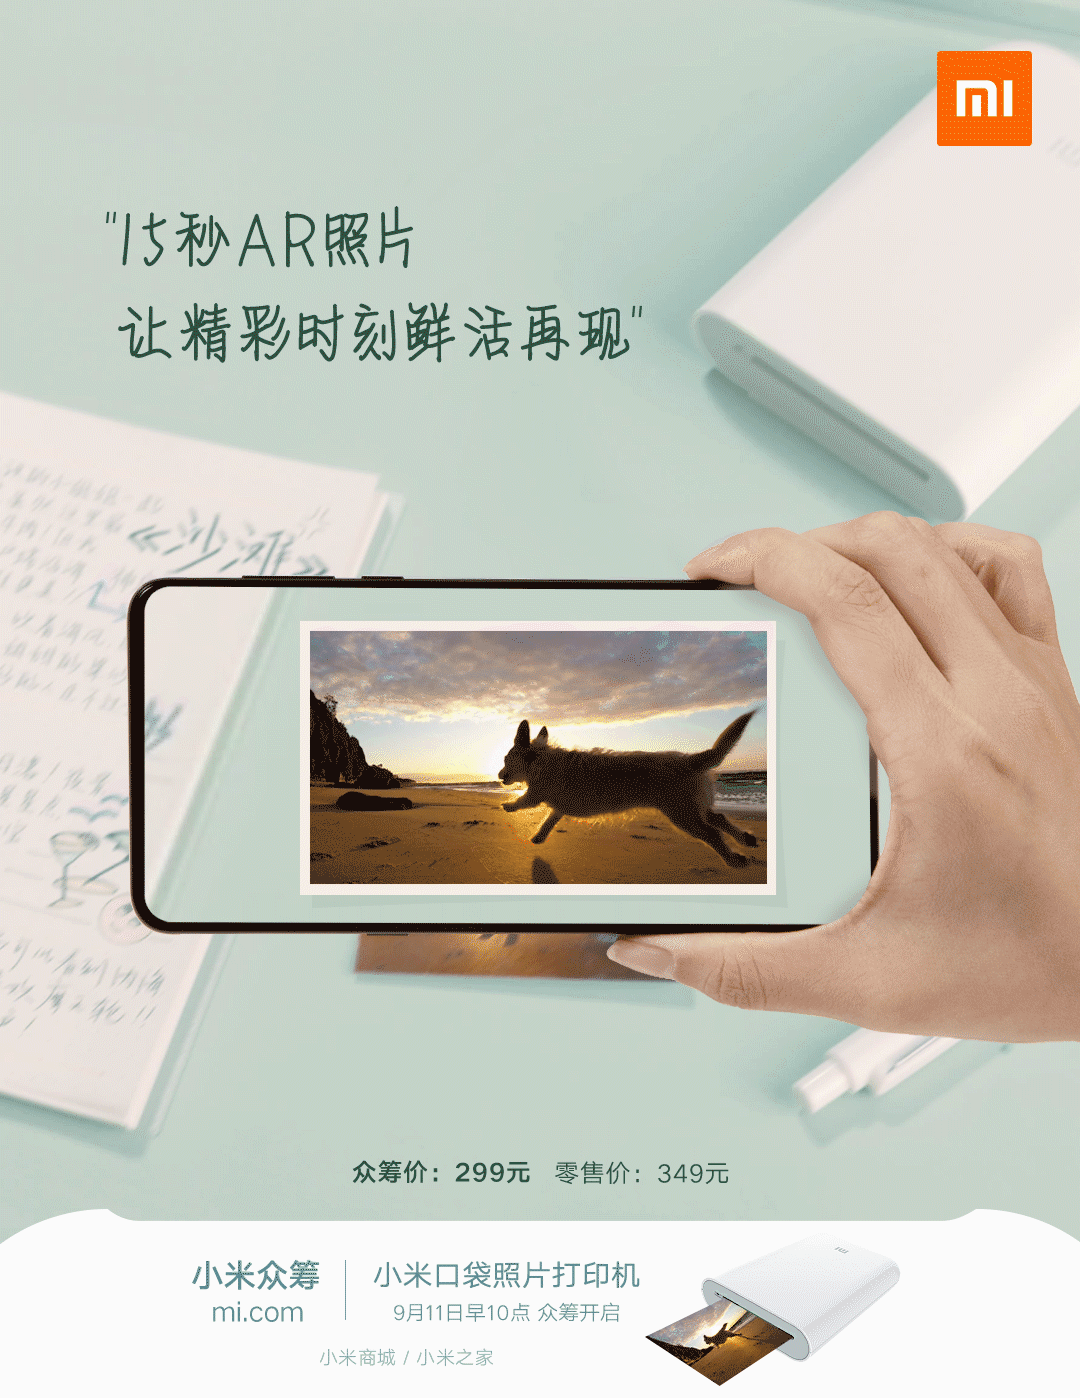 Новый фотопринтер Mijia AR, принтер дополненной реальности Xiaomi. Xiaomi Зависимые новости